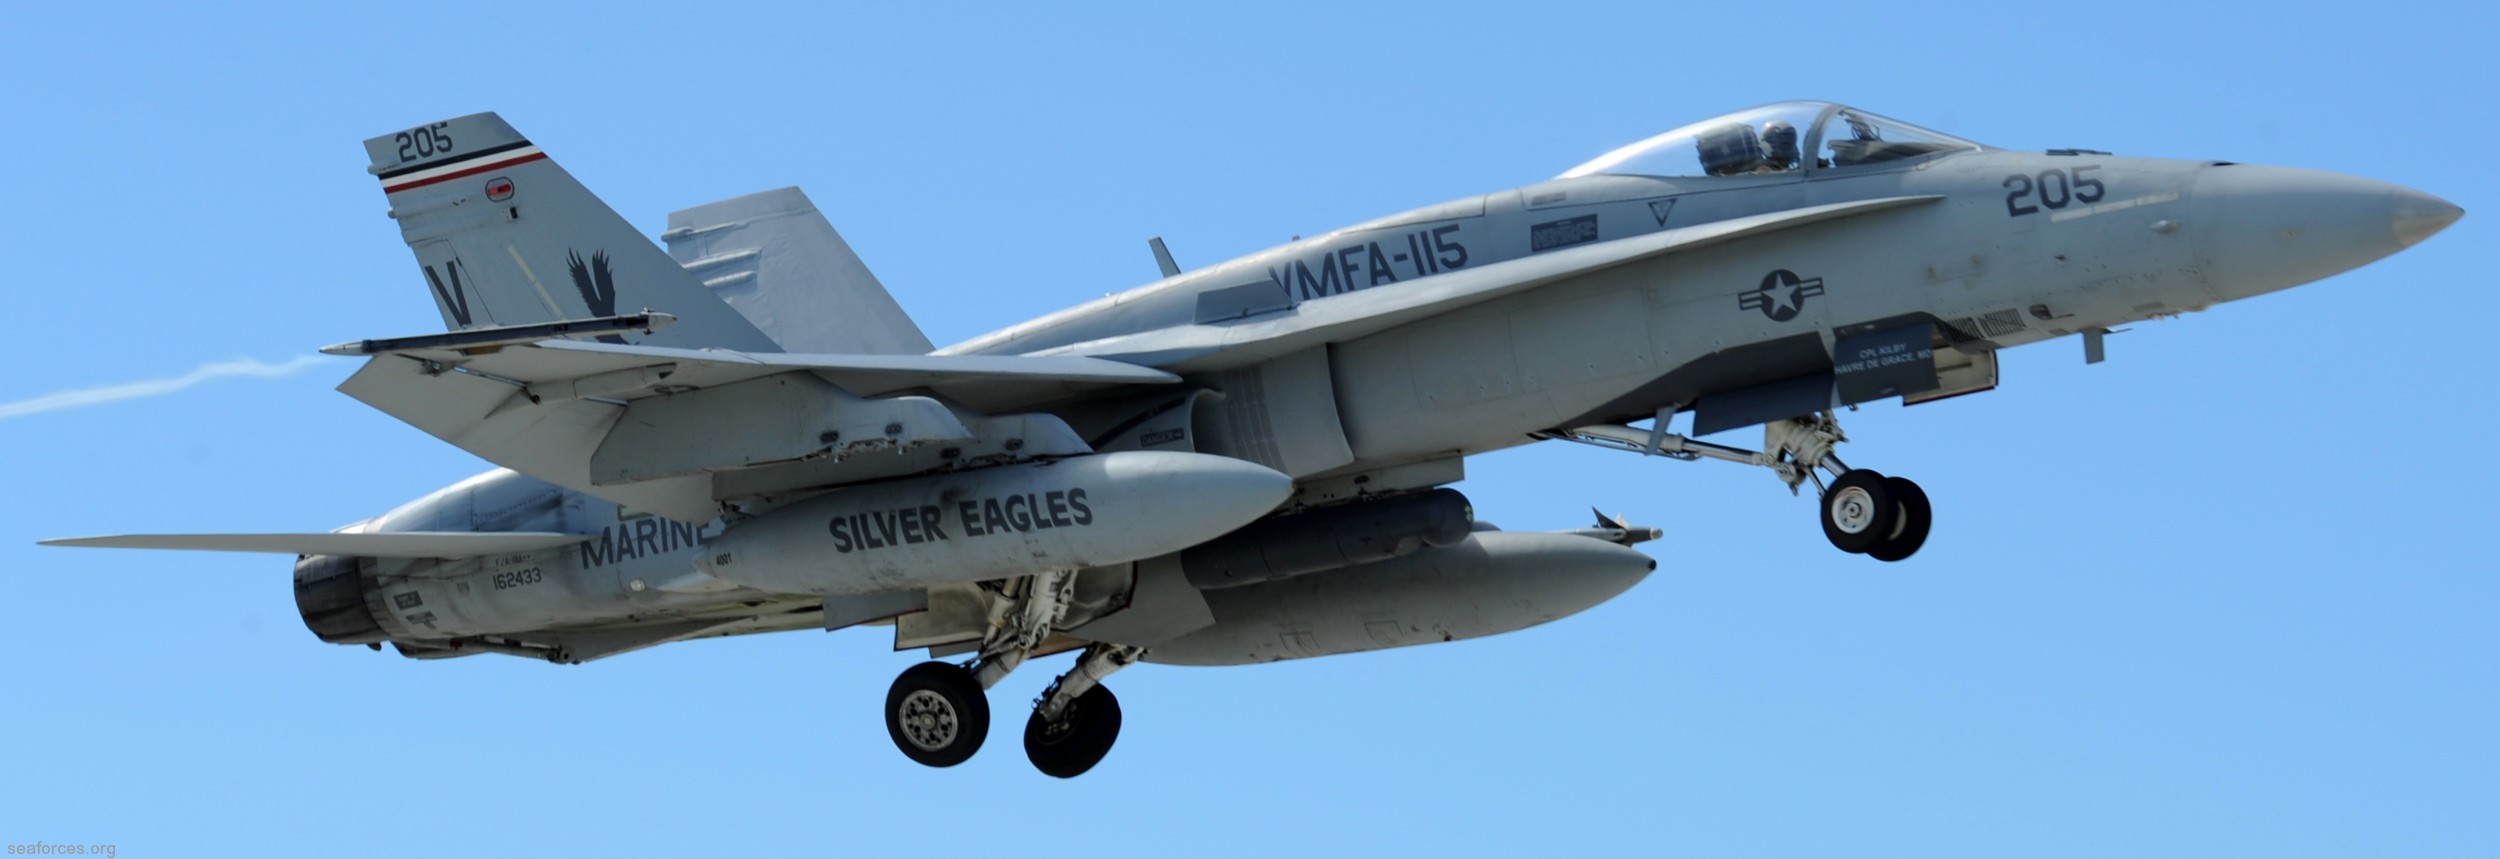 vmfa-115 silver eagles marine fighter attack squadron f/a-18a+ hornet 139